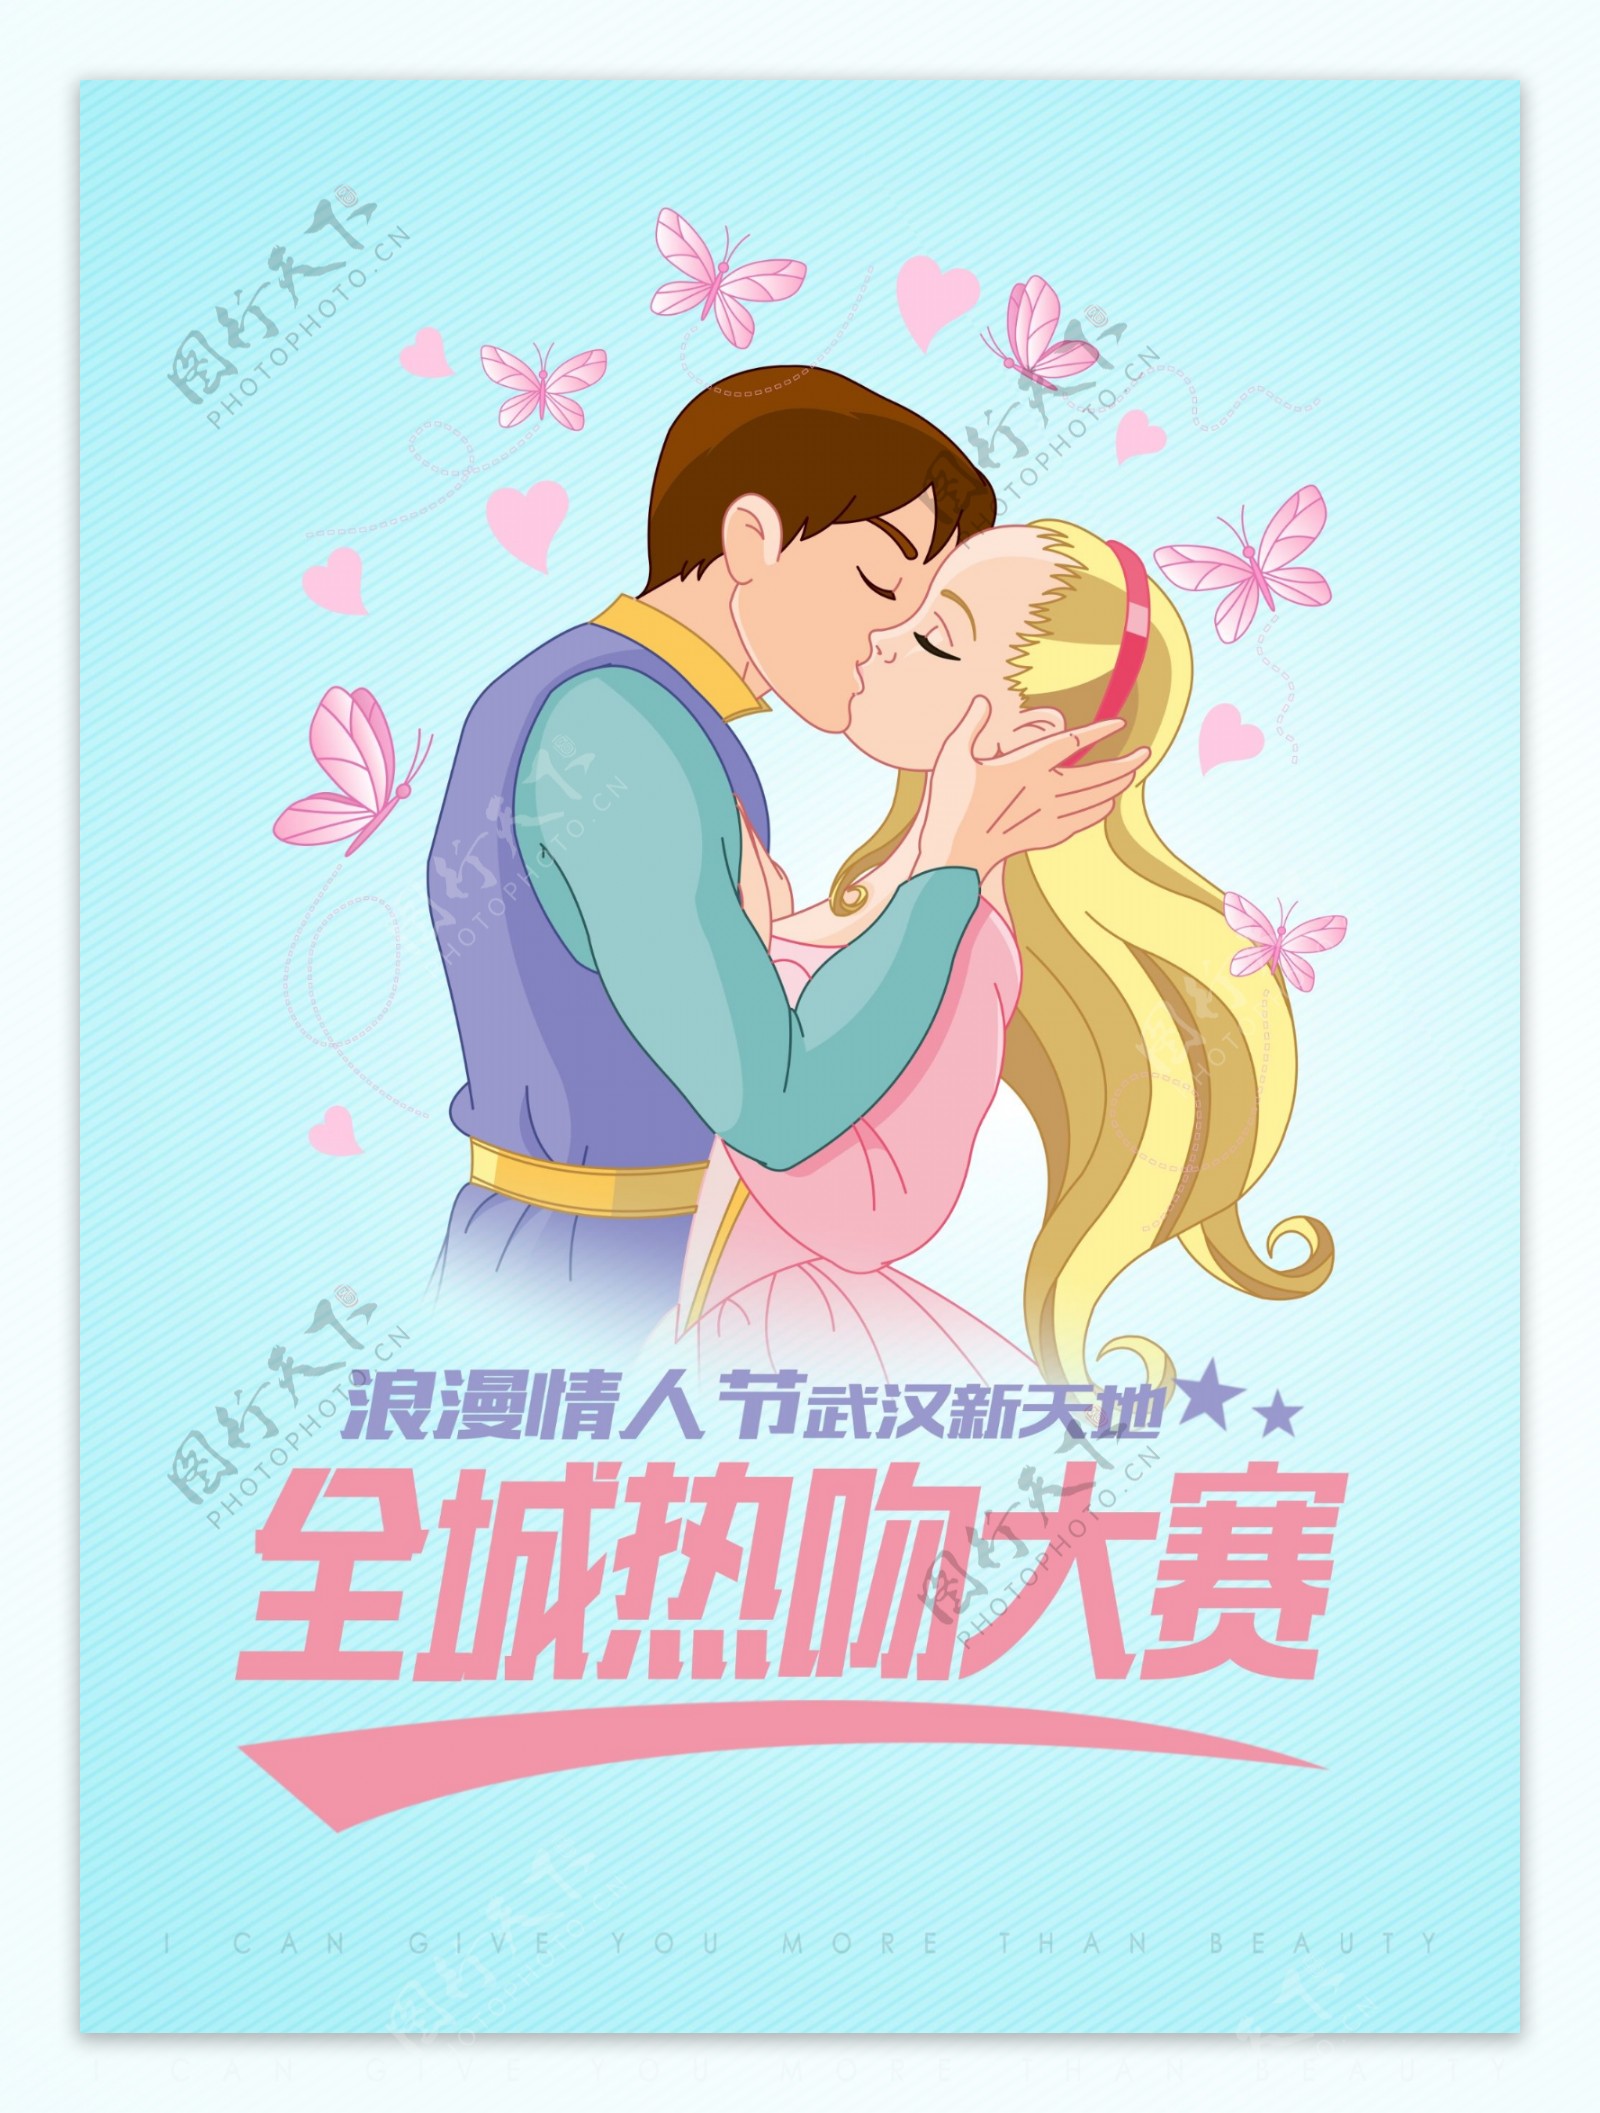 情人节全城热吻大赛宣传海报